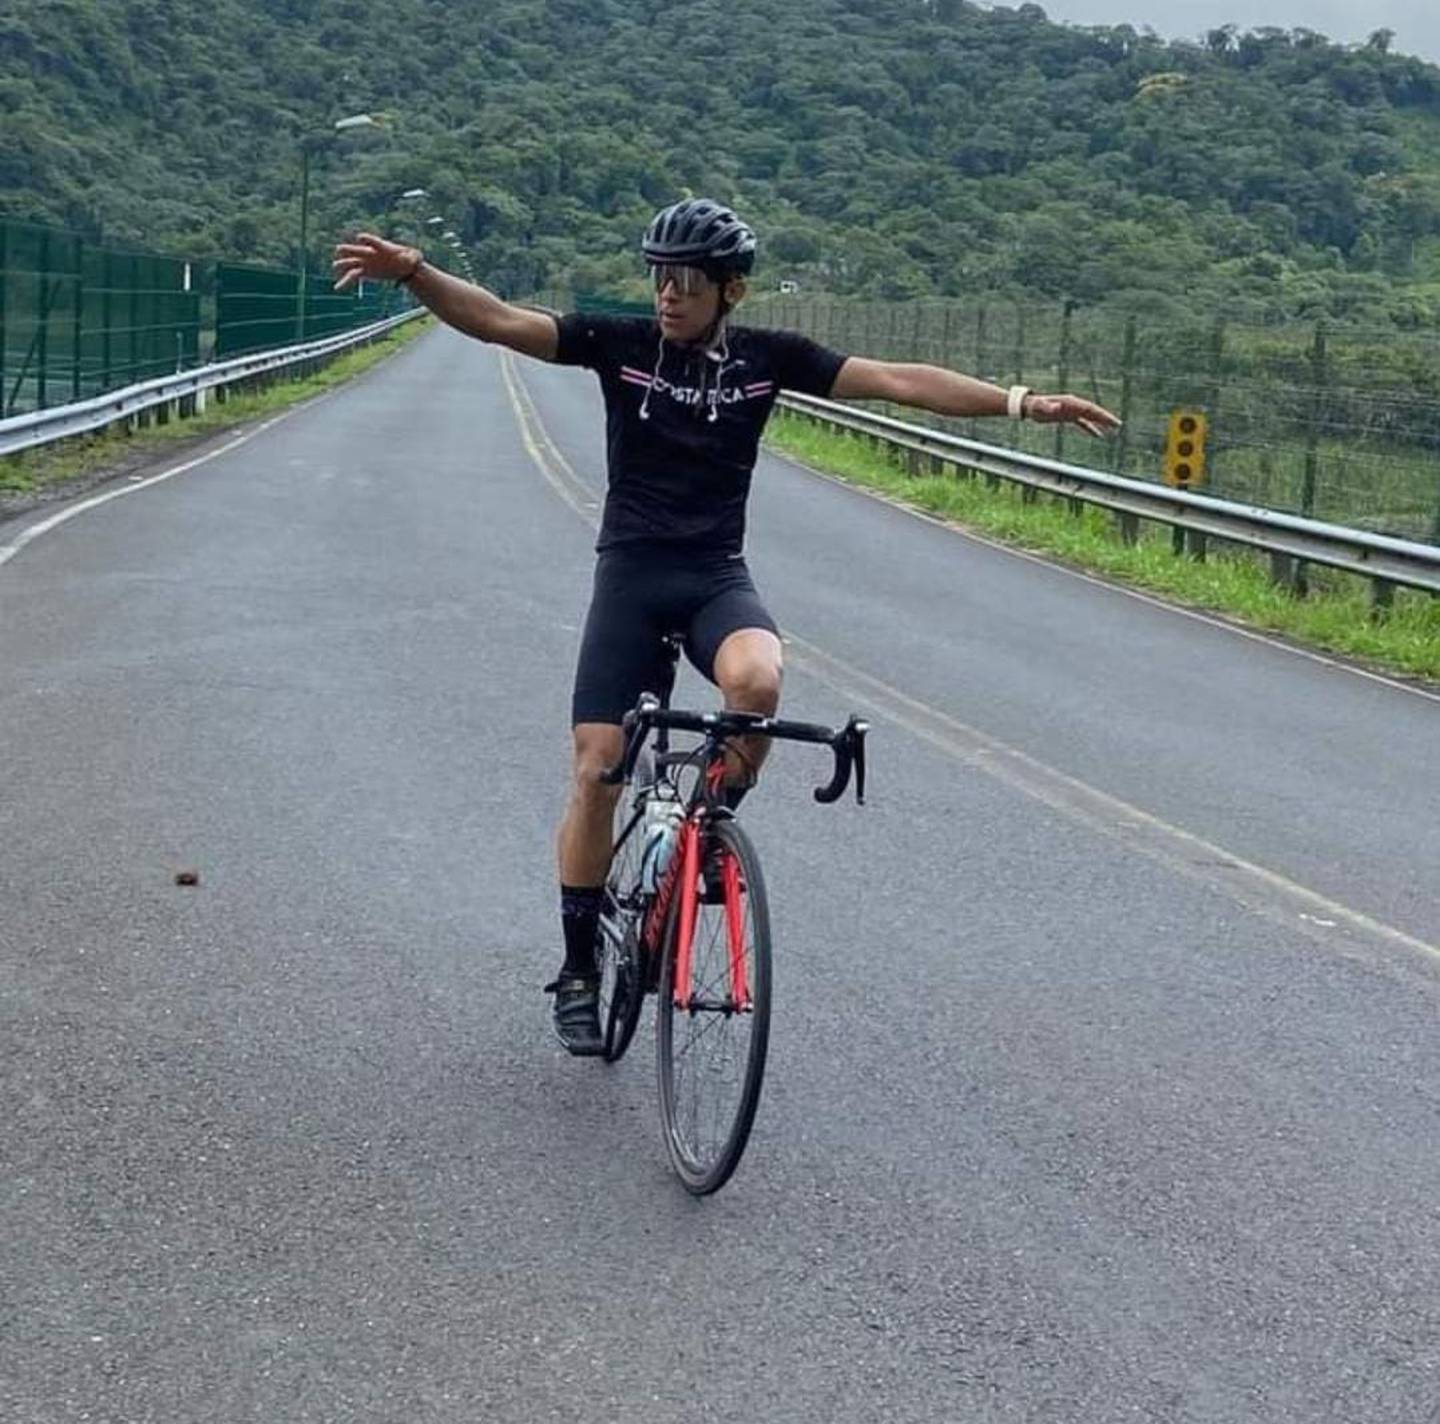 El ciclista Omar Gerardo González González, de 38 años, entrenaba fuerte para su primer gran fondo en bici, un accidente de tránsito le arrebató el sueño. Foto: Cortesía Karen Méndez para LT